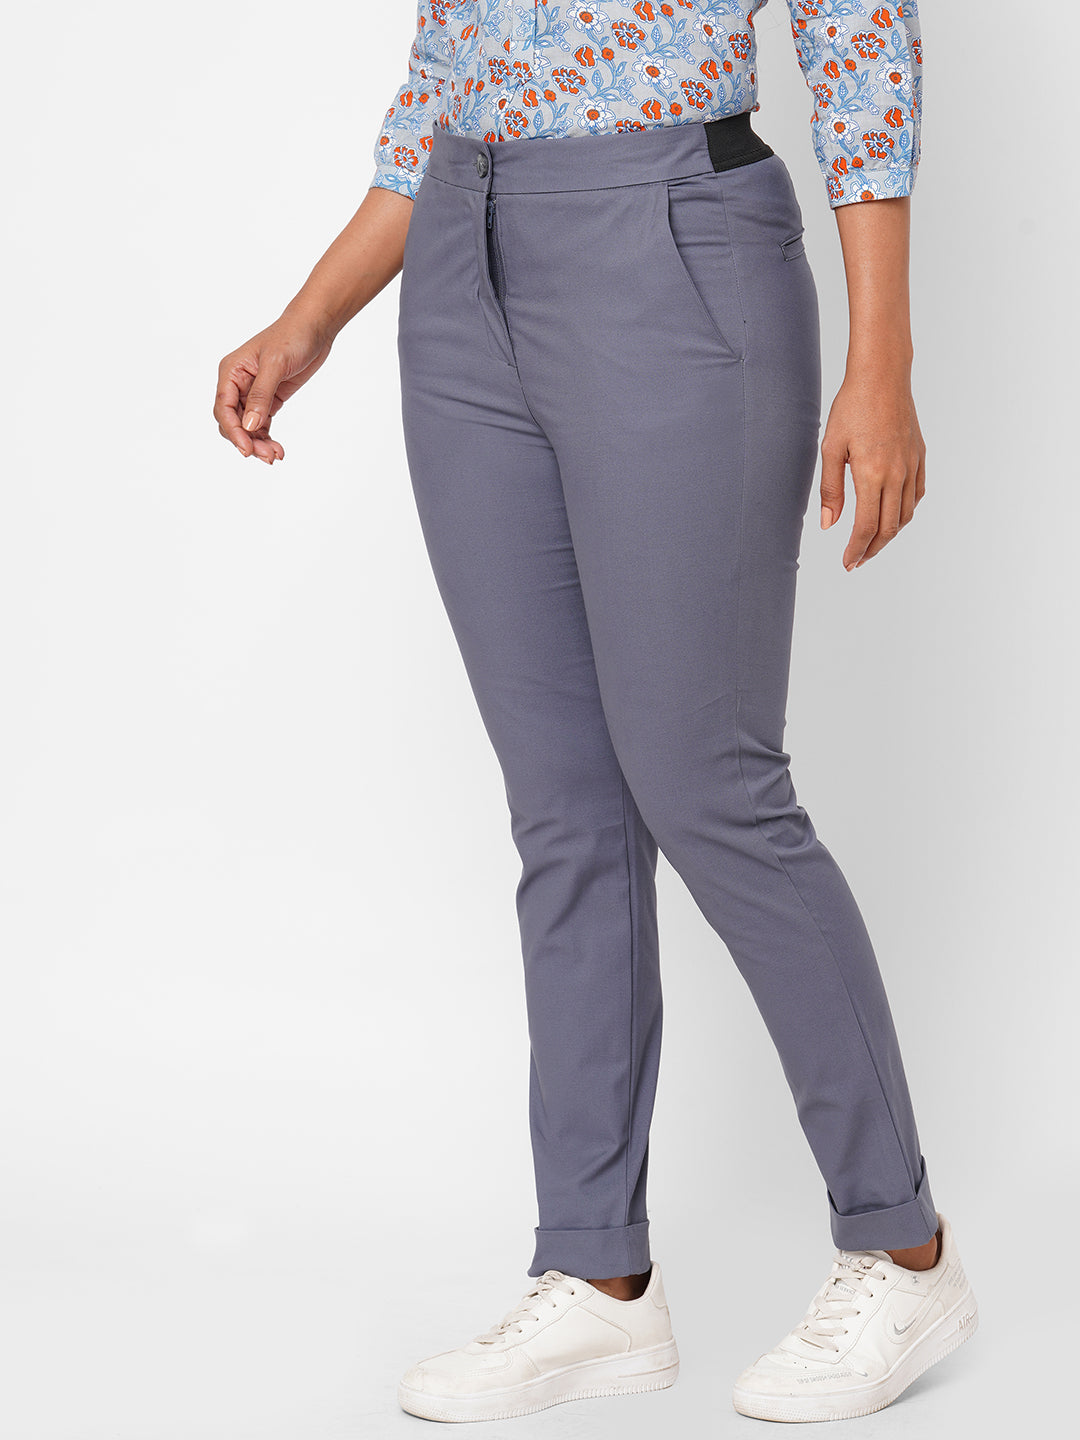 Women's Blue Cotton Lurex Slim Fit Pant